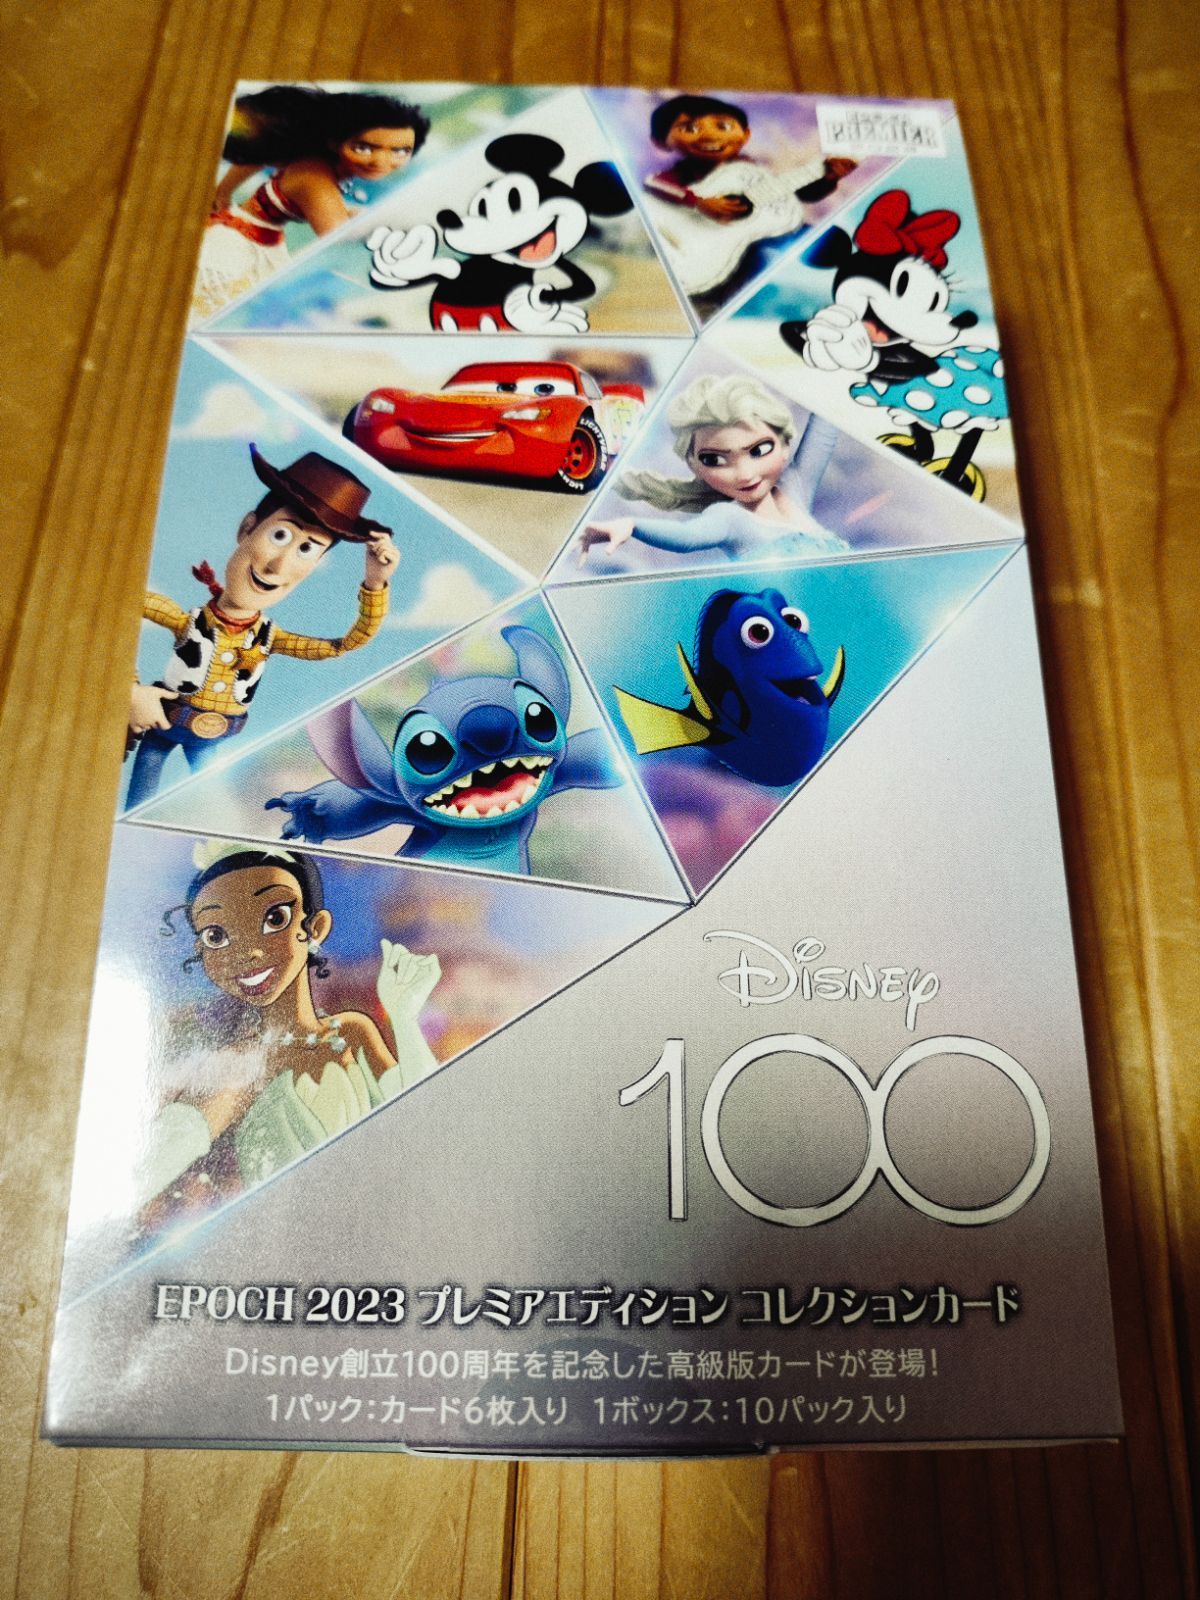 69sold】 Disney100 EPOCH 2023 プレミアエディション コレクション 